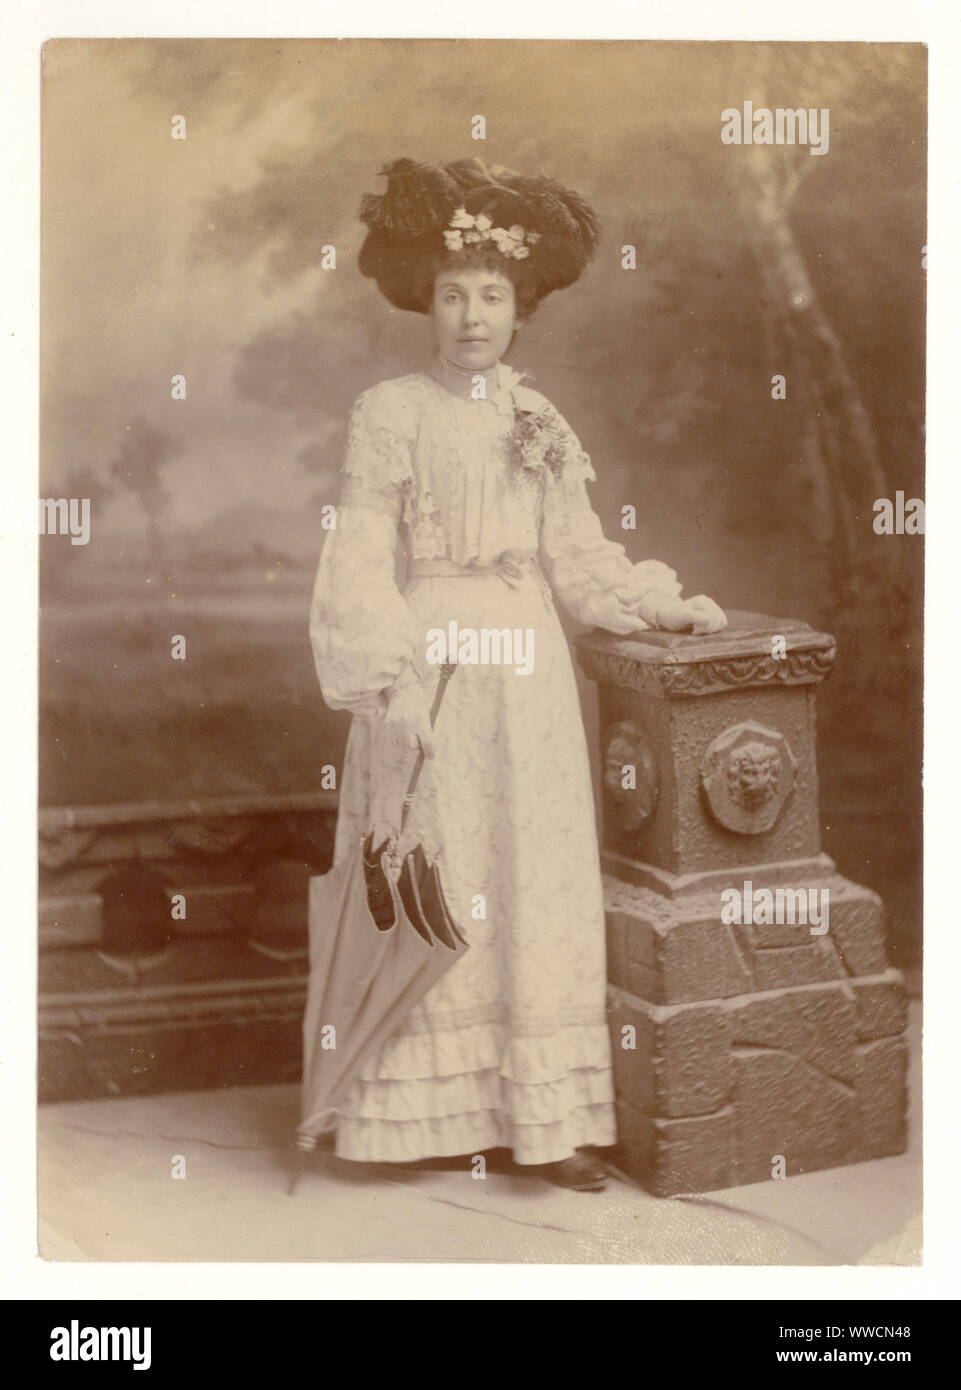 Original, clair, Edwardian Studio portrait photographie de la jeune femme Edwardian glamour et tendance portant une tenue d'été, chapeau élaboré orné de nombreuses plumes, tenant un parasol, vers 1903, Royaume-Uni Banque D'Images